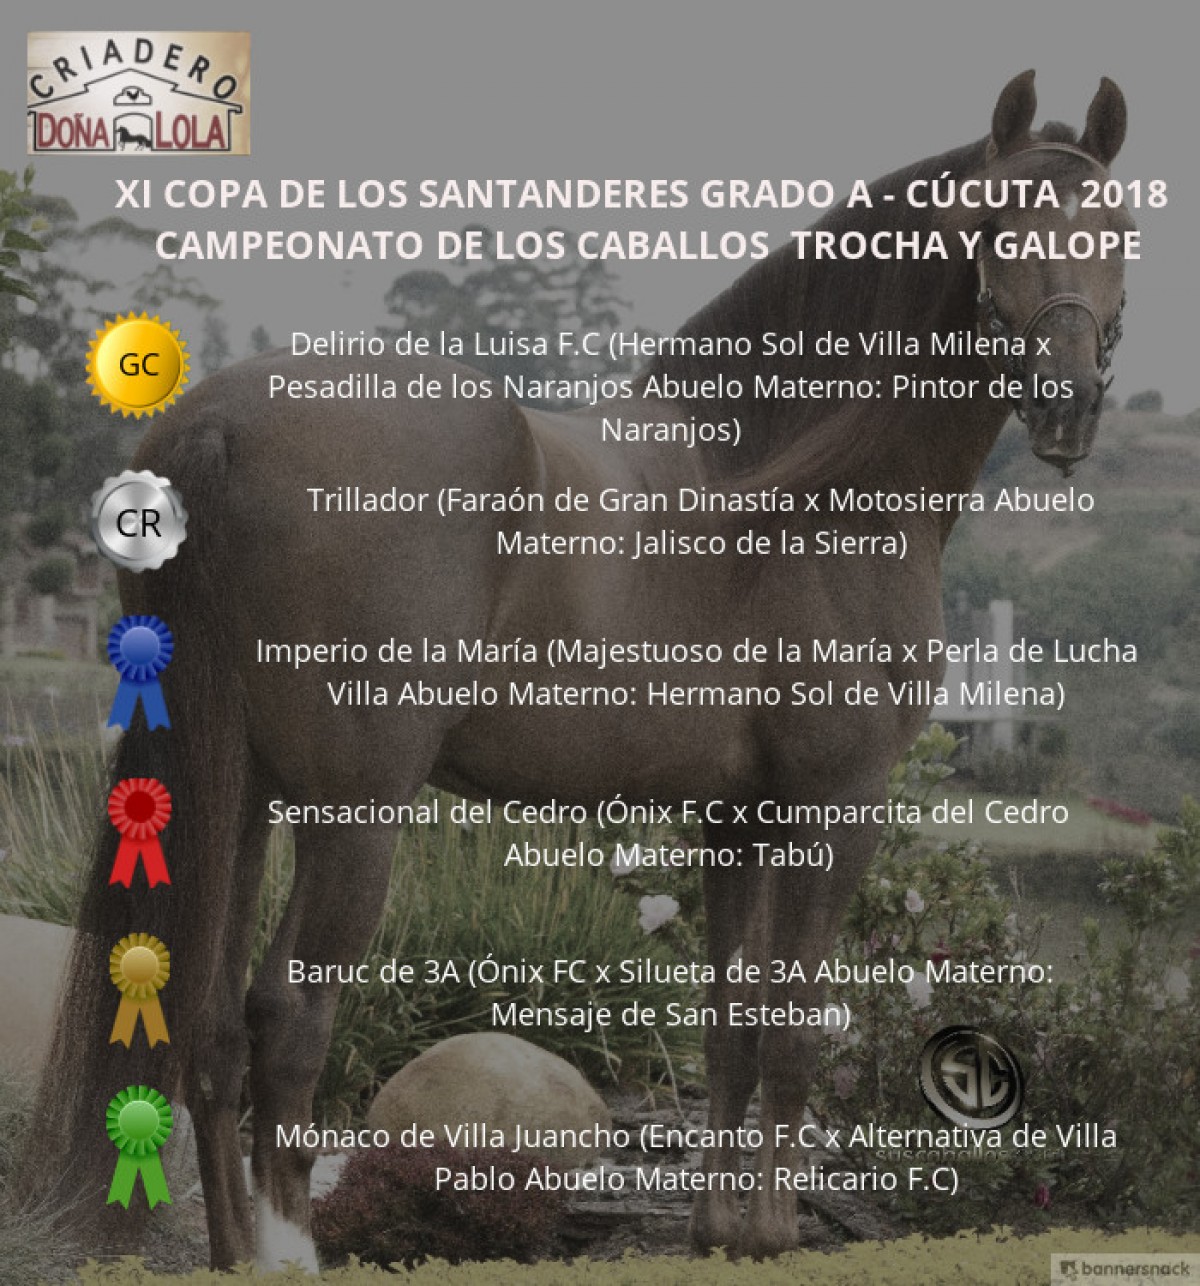 VÍDEO: Delirio Campeón, Trillador Reservado, Trocha y Galope, Cúcuta 2018